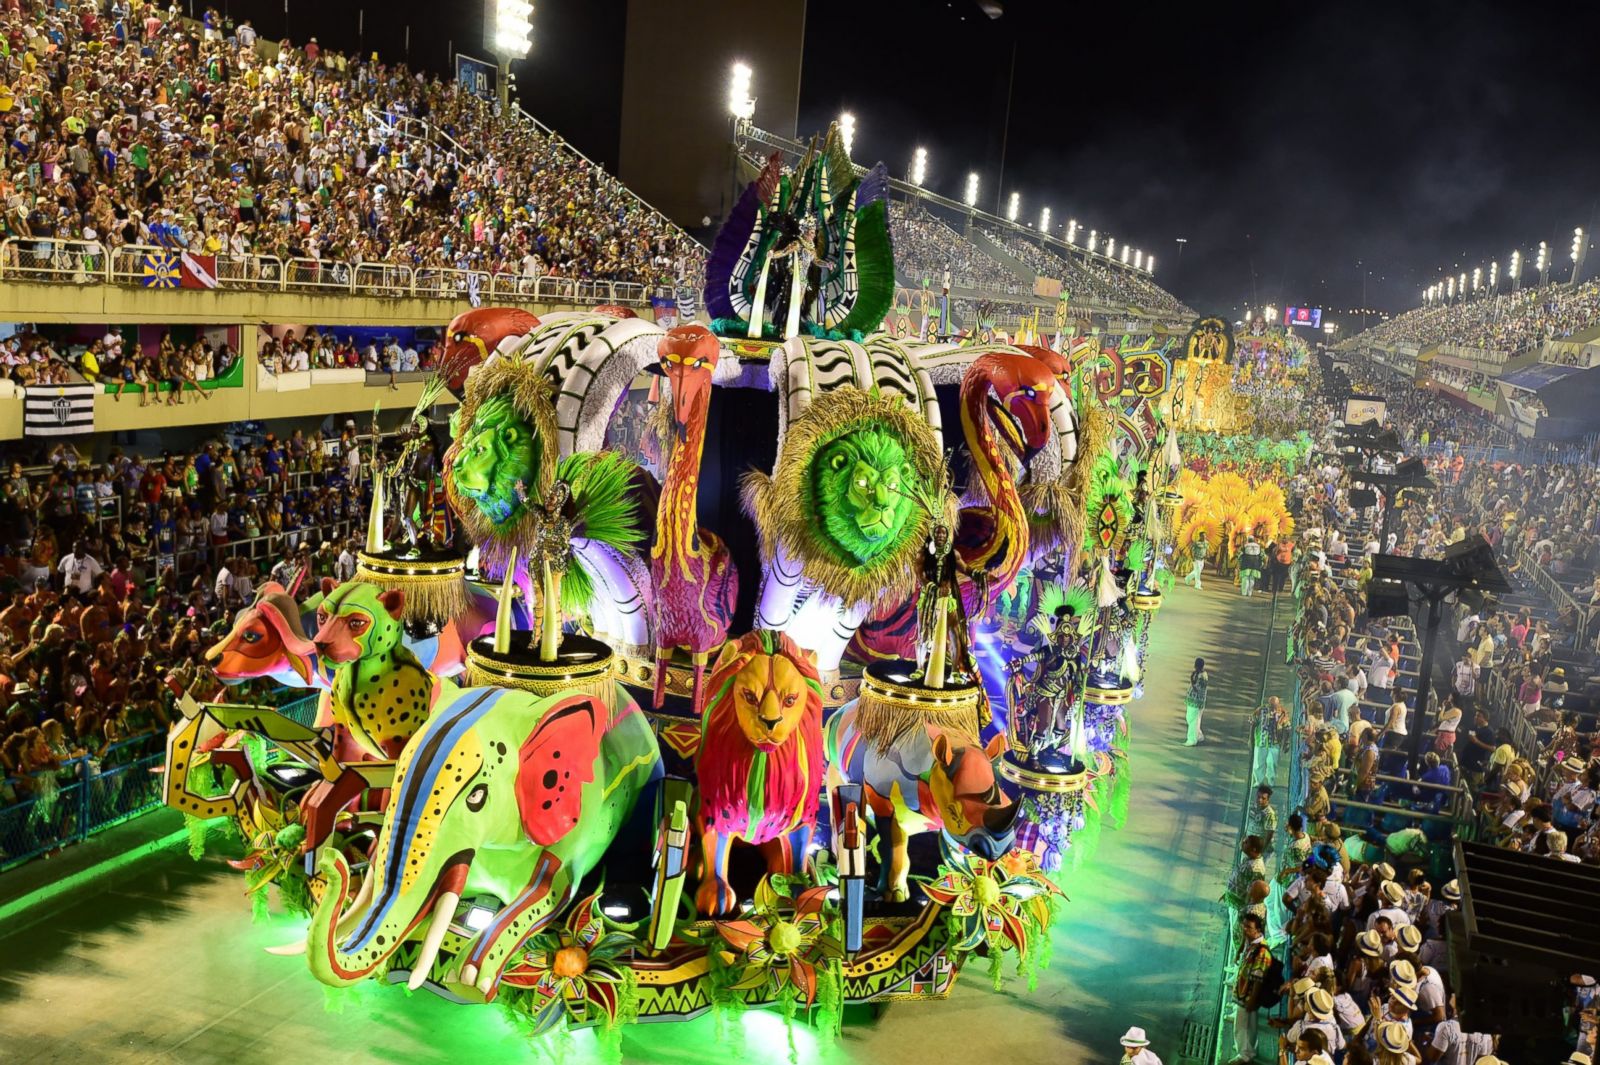 Best Image of Carnival in Brazil Photo. Image